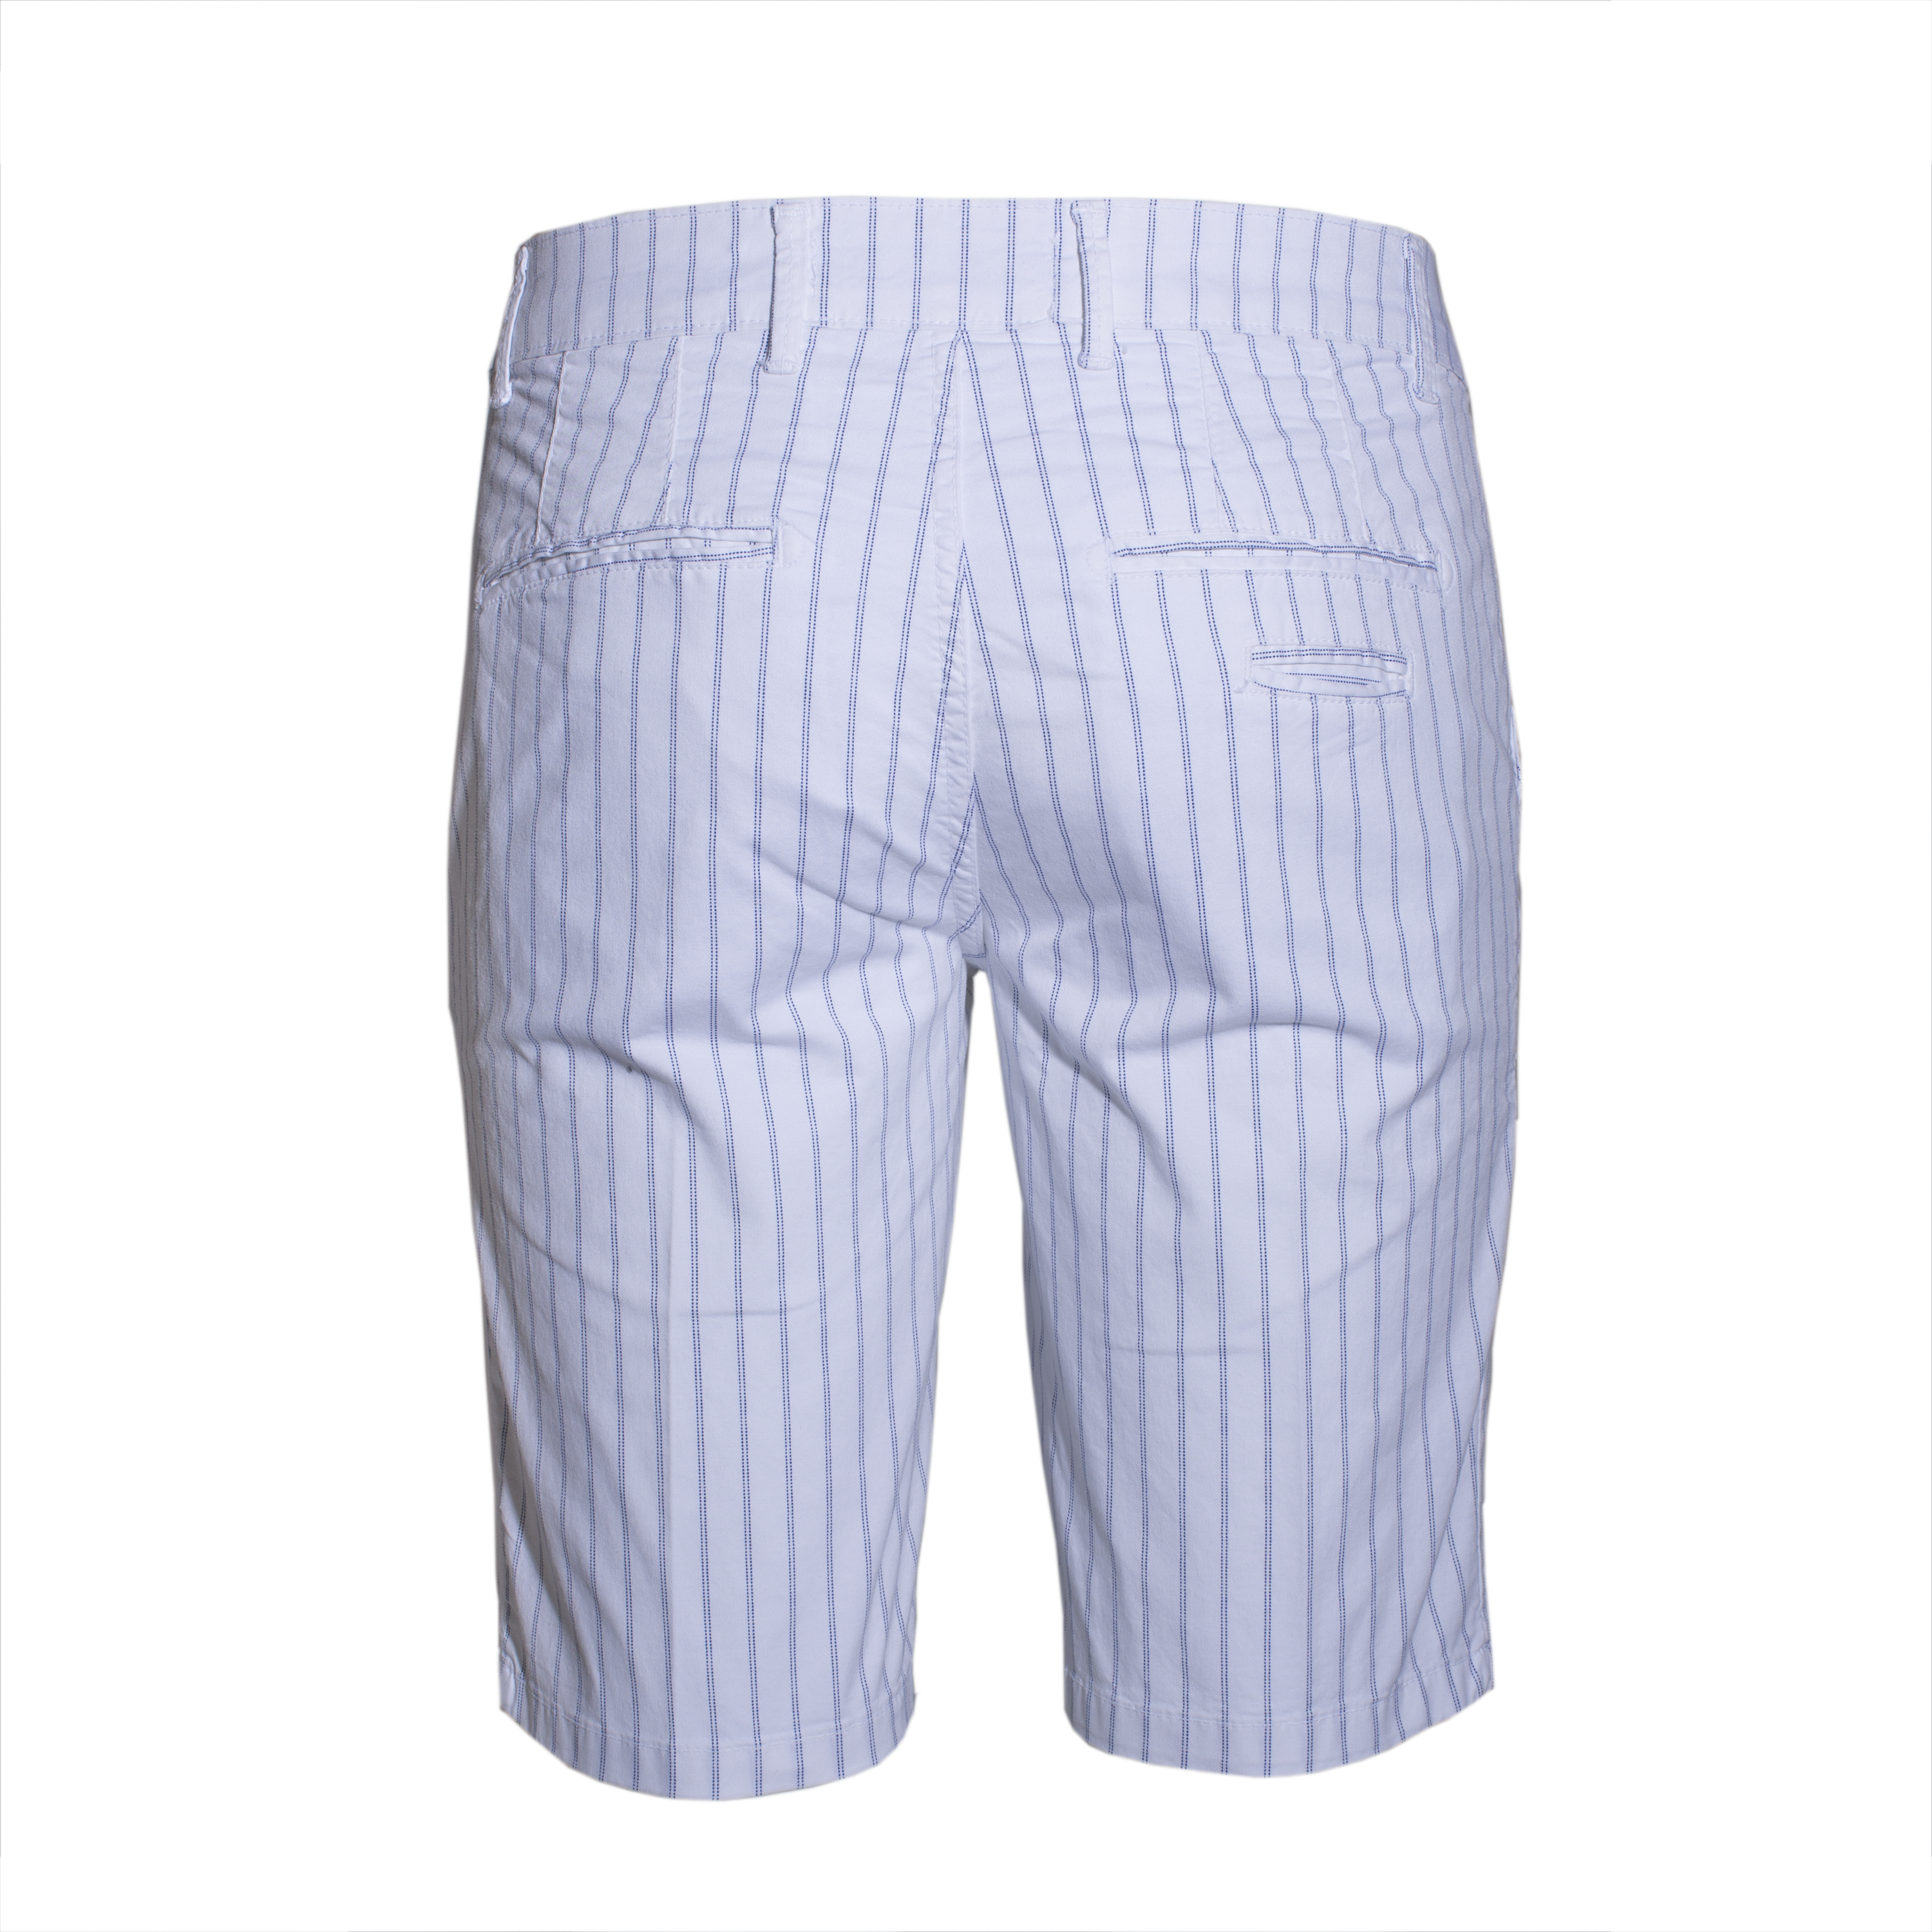 Bermuda Uomo Pantaloncini in Cotone Bianco Rigato